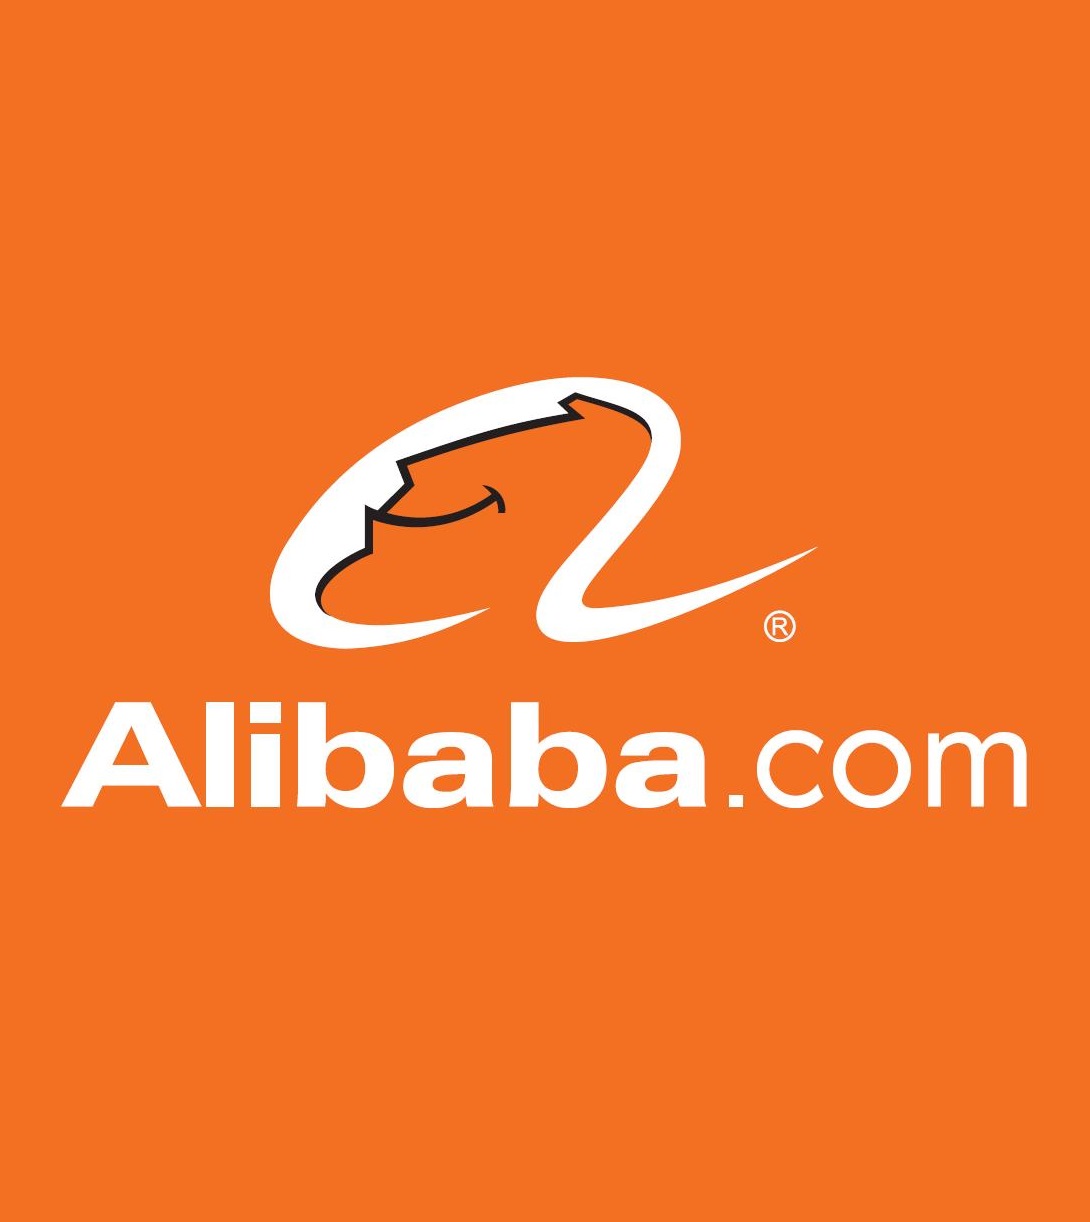 САЩ постави Alibaba в черния списък